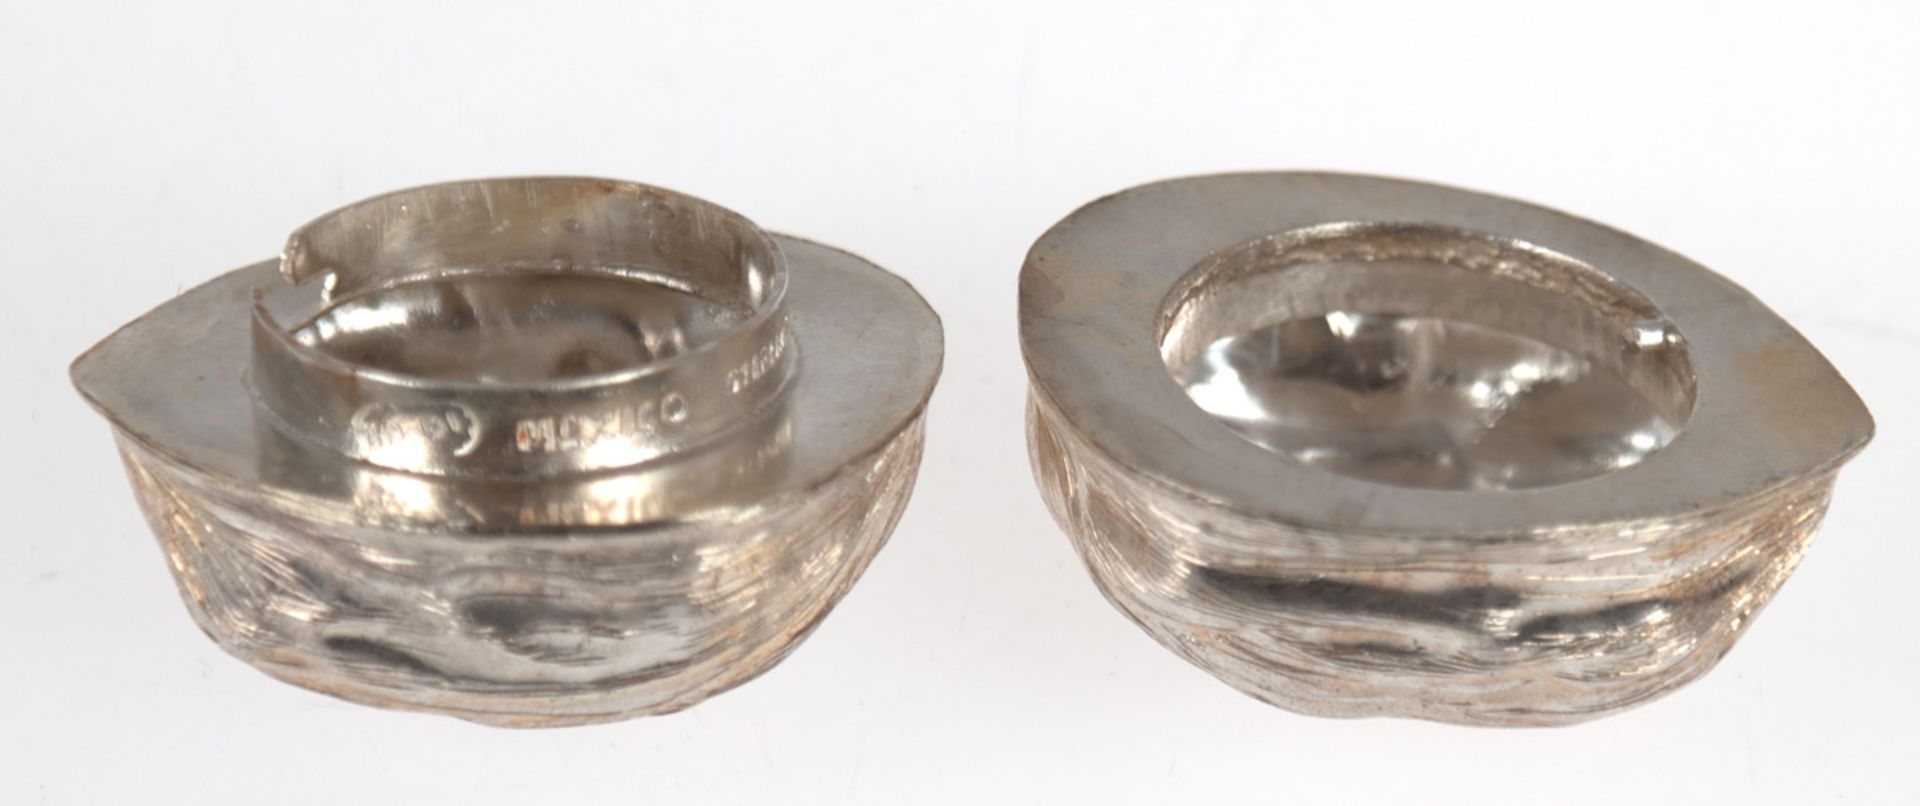 Pillendose in Form einer Walnuß, 925er Silber, punziert, ca. 17 g, L. 3,7 cm - Bild 3 aus 3